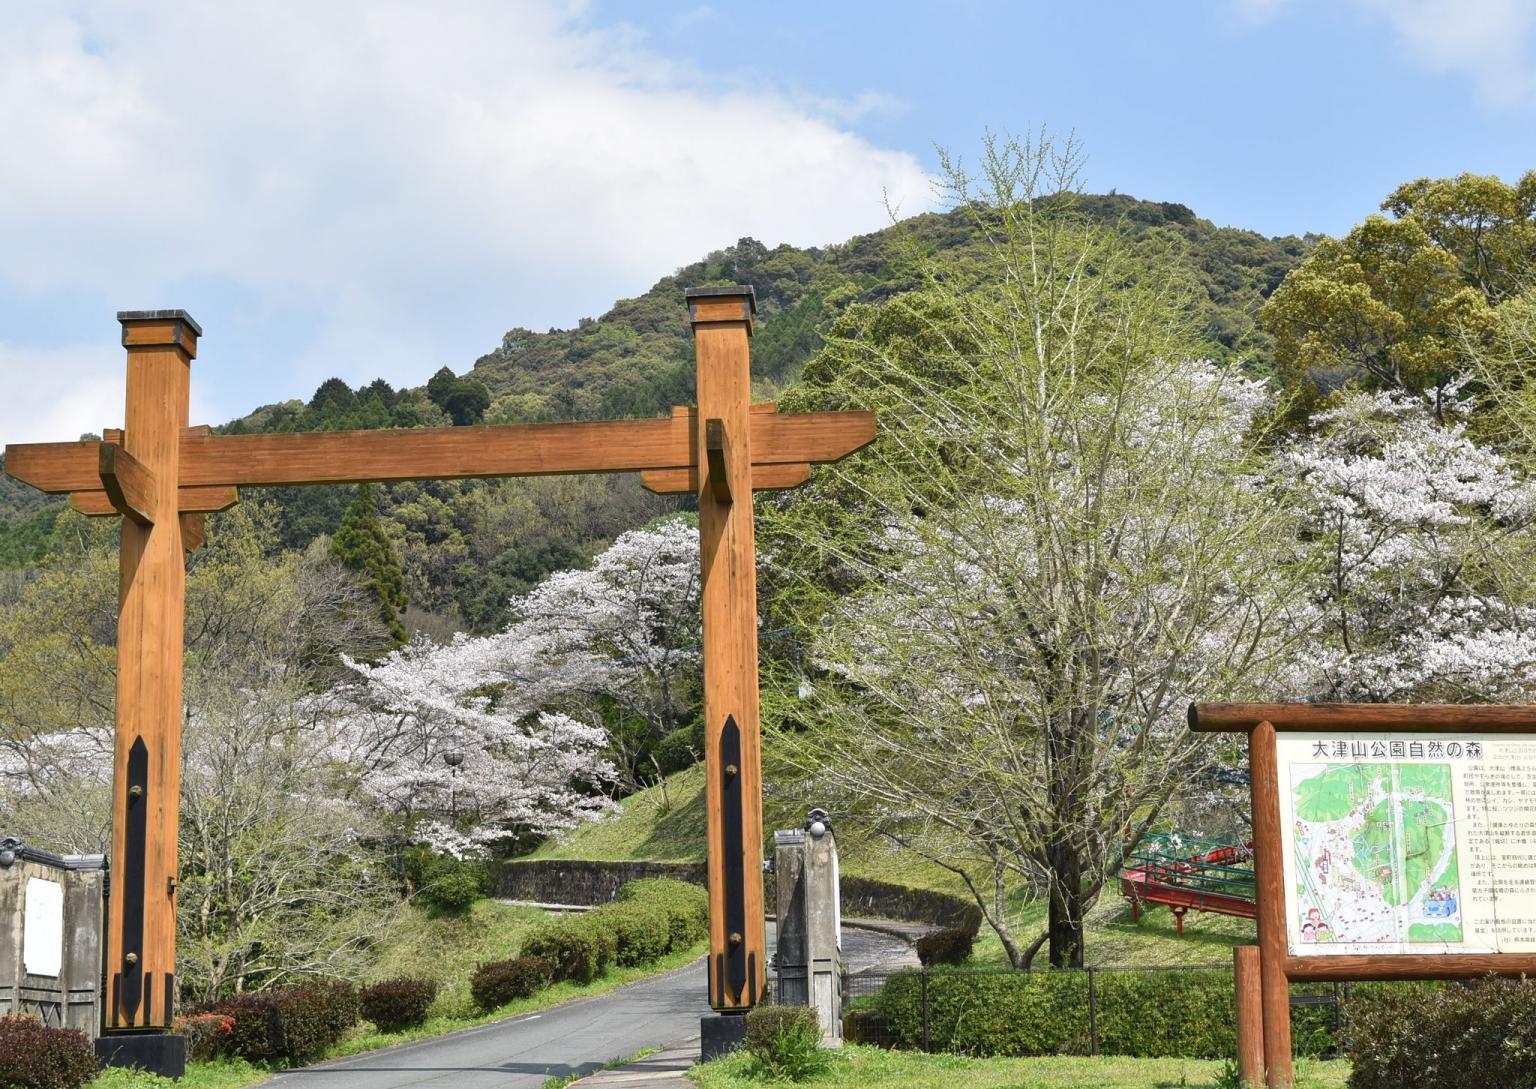 大津山公園 観光地 公式 熊本県観光サイト もっと もーっと くまもっと